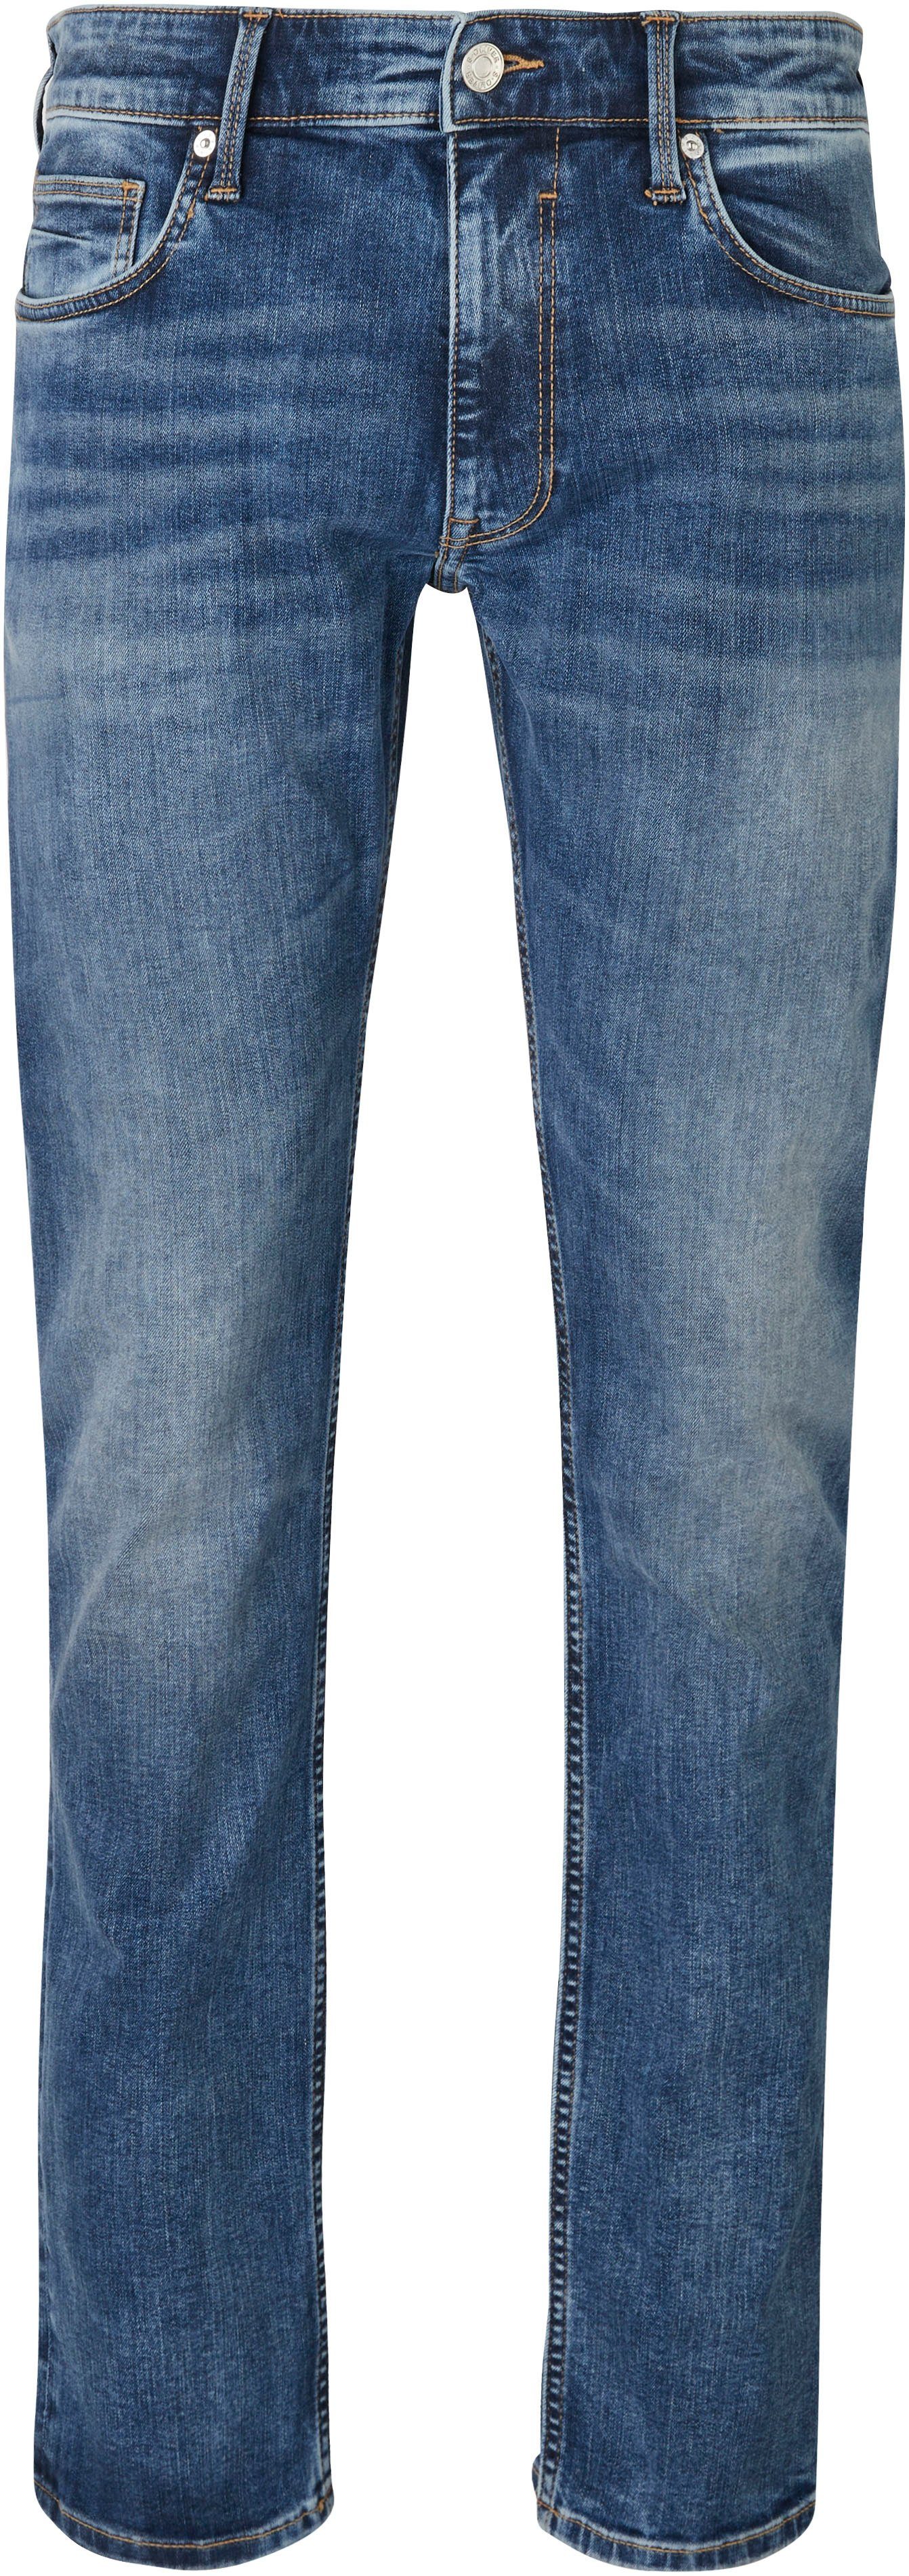 s.Oliver Bequeme Jeans und 32 blue mit Gesäß- Eingrifftaschen mid